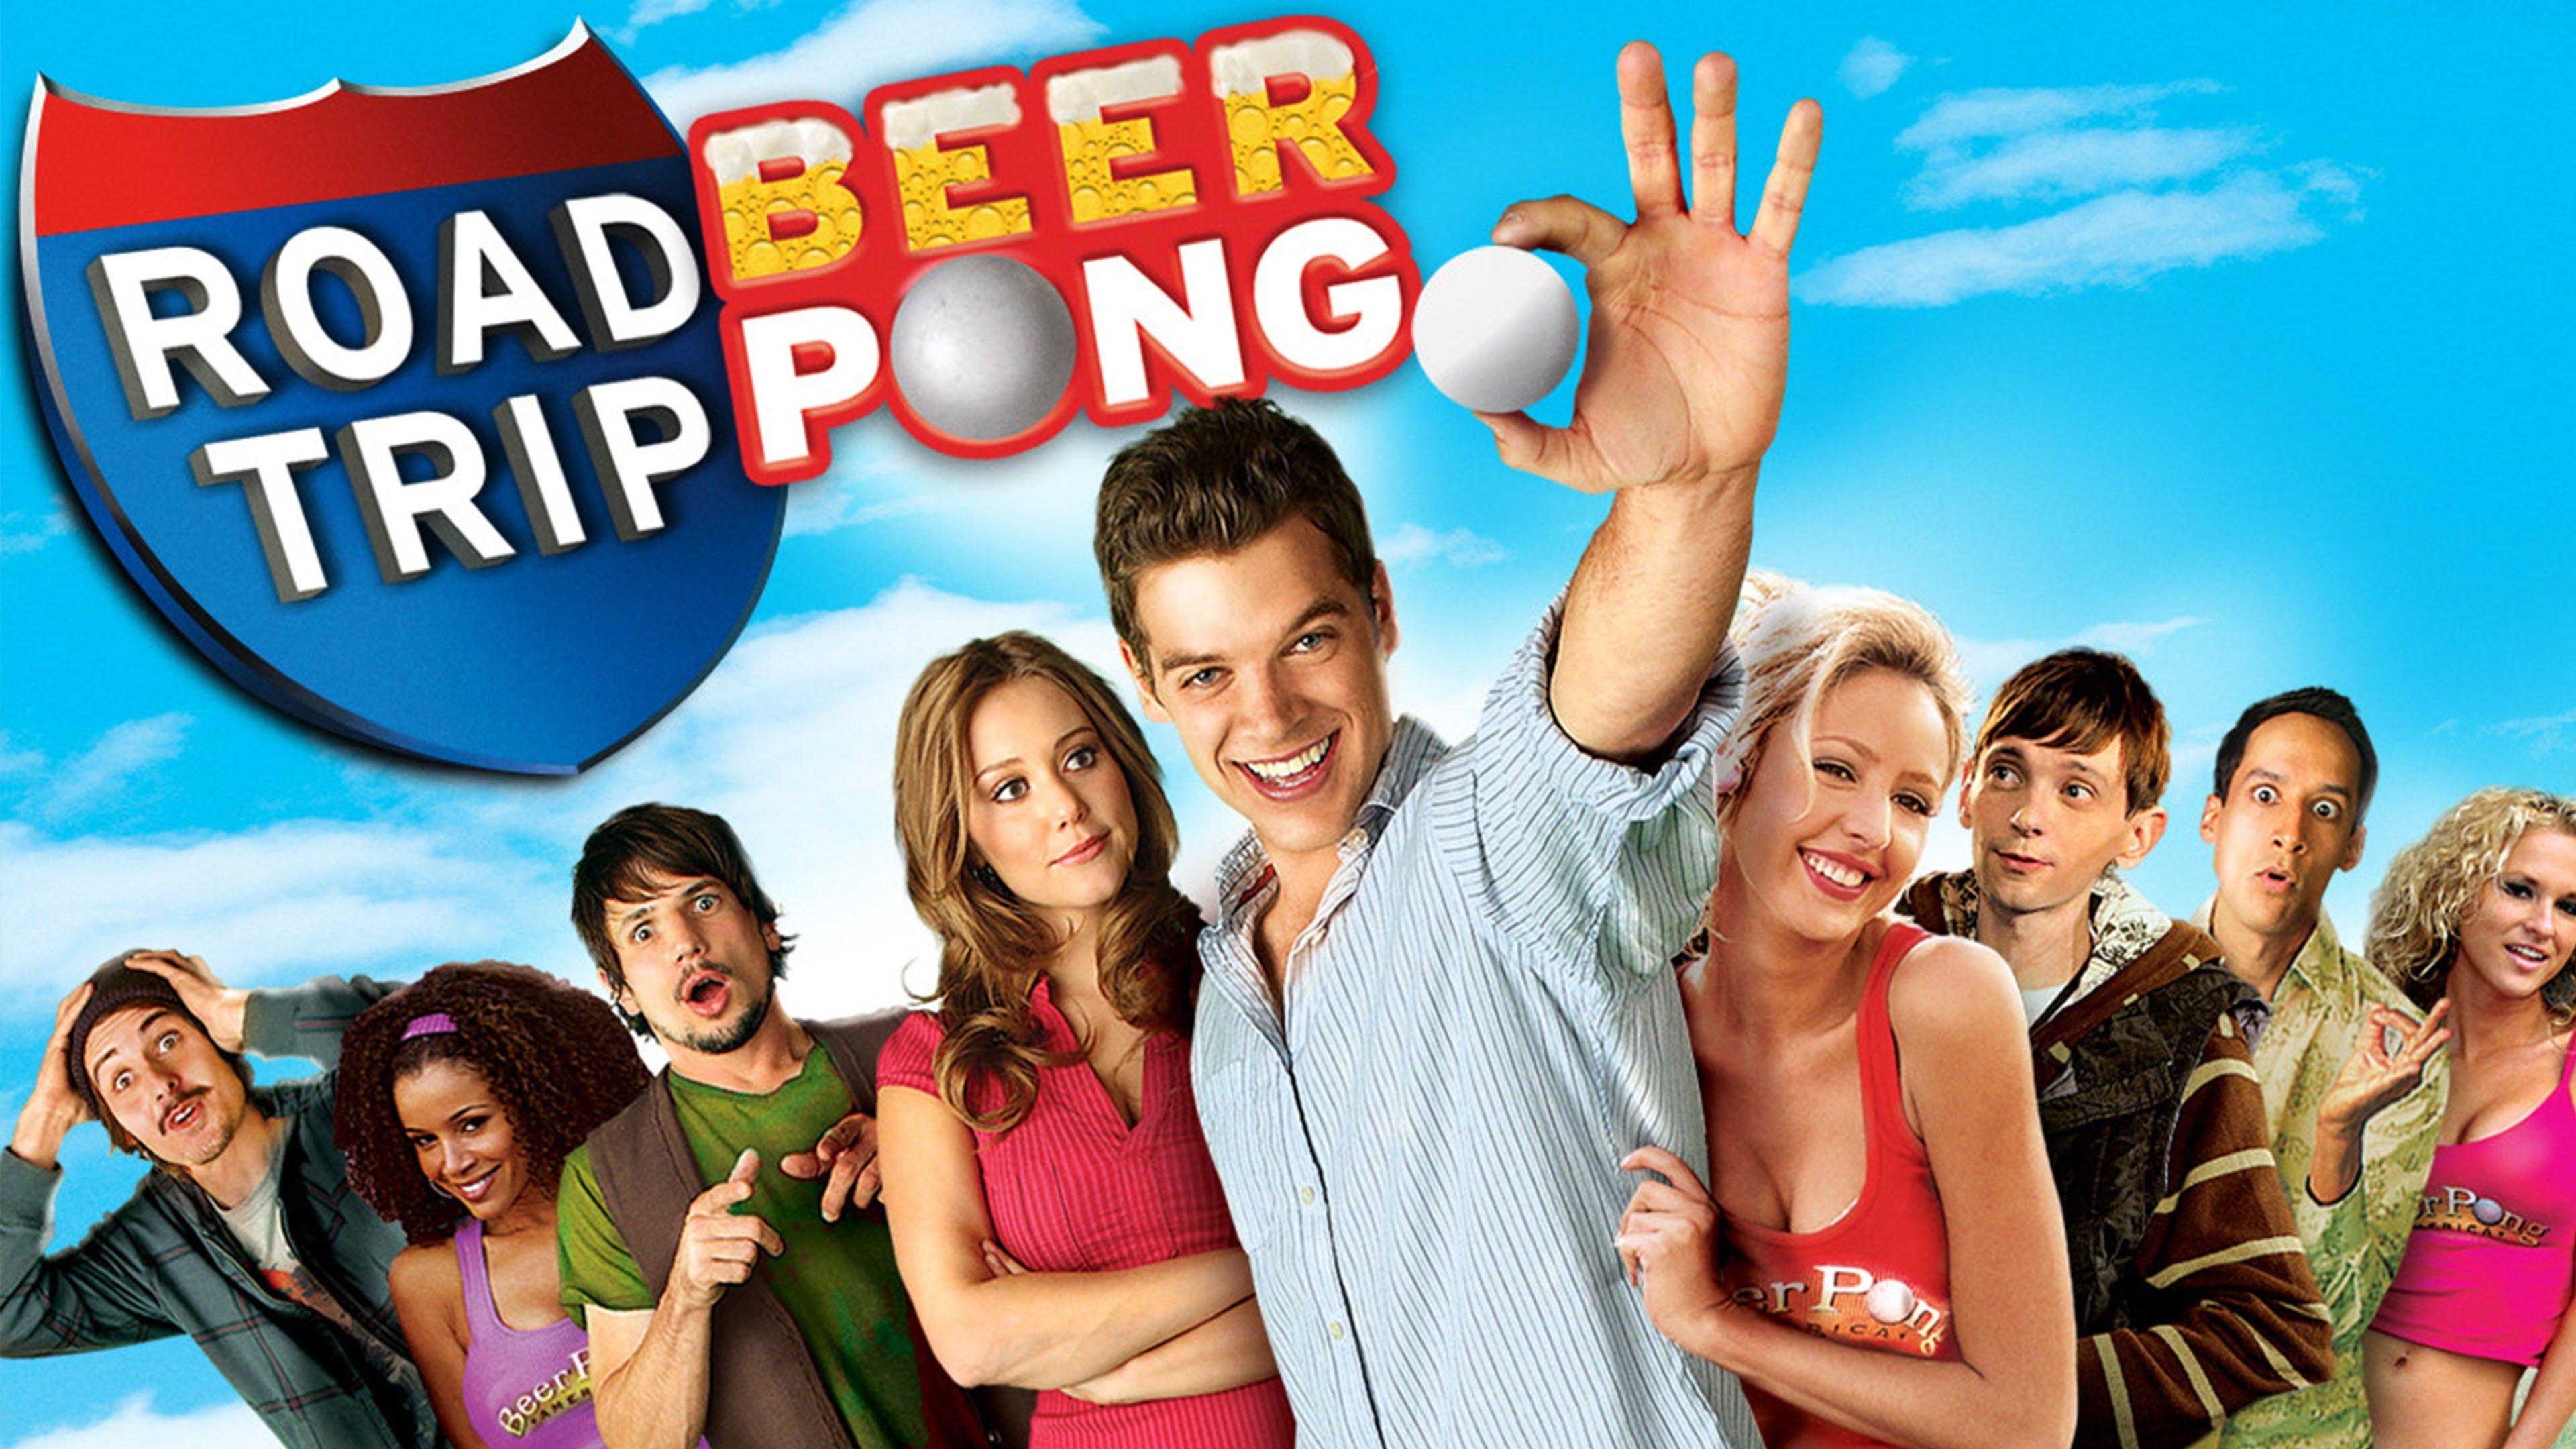 road trip beer pong streaming community